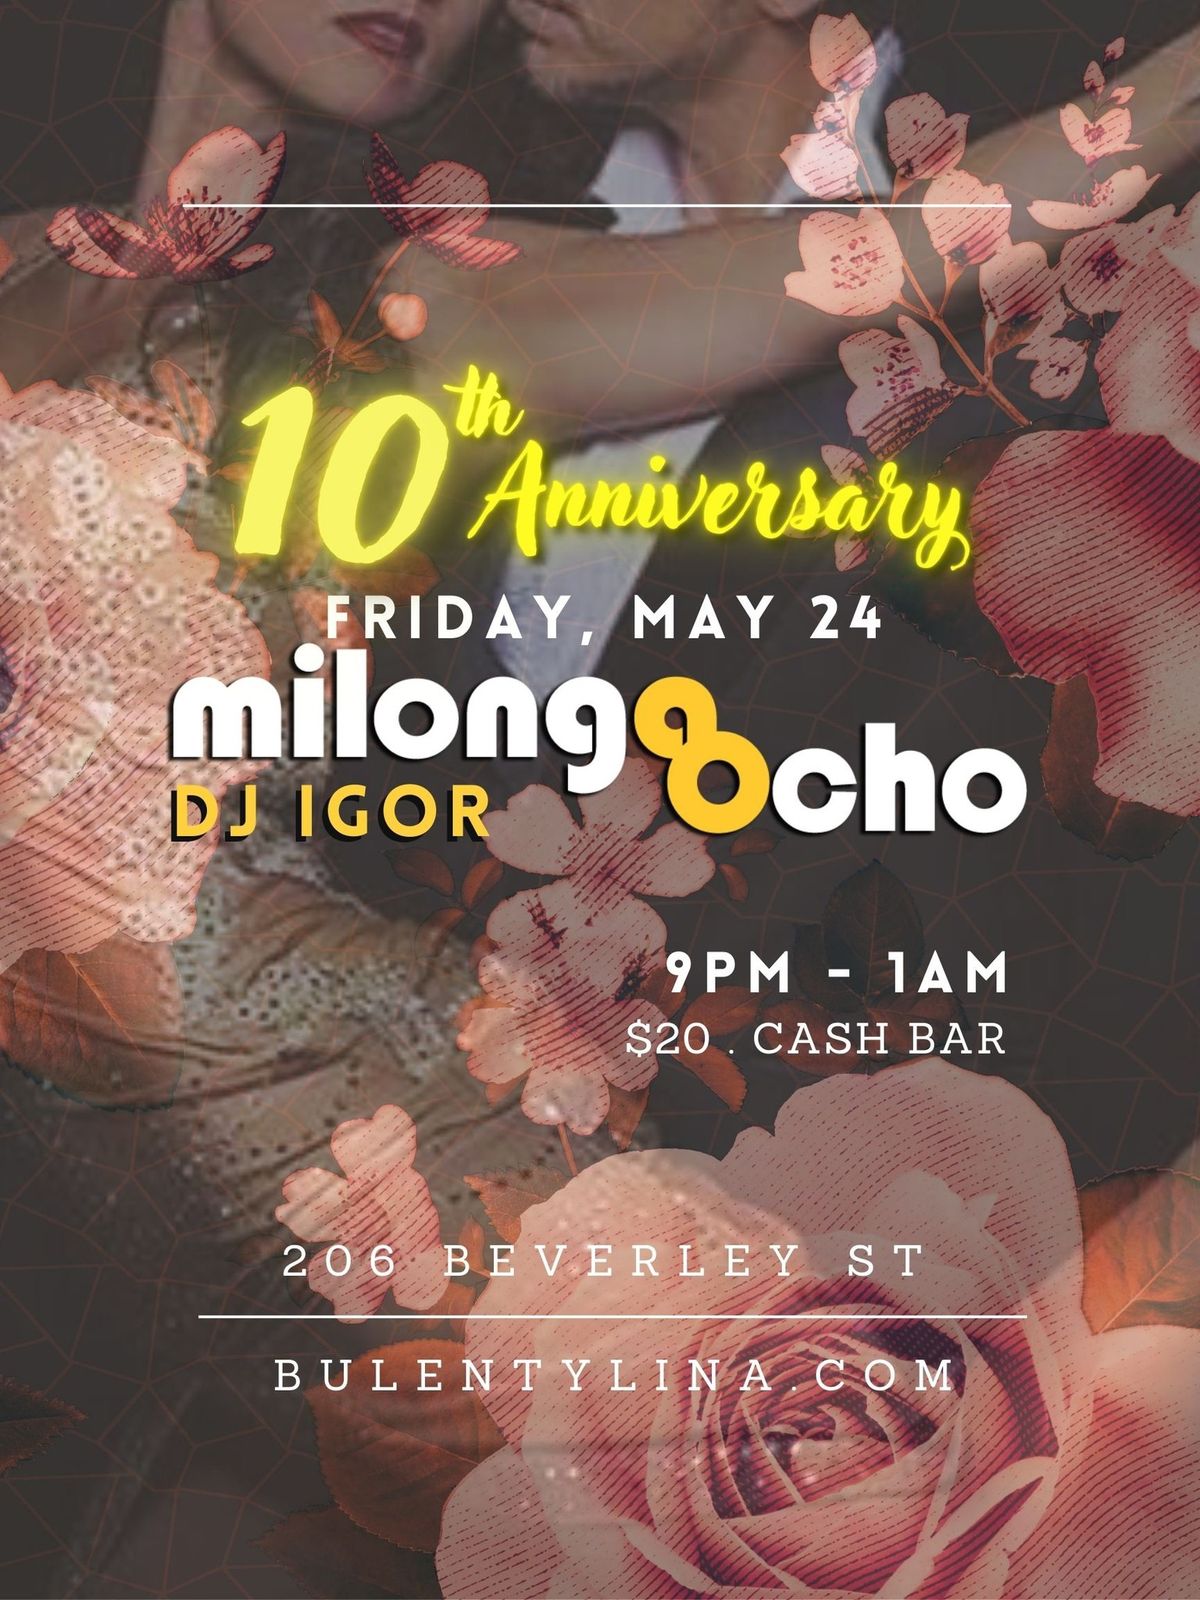 MILONGA OCHO ?10th Anniversary, May 24, Friday with DJ Igor